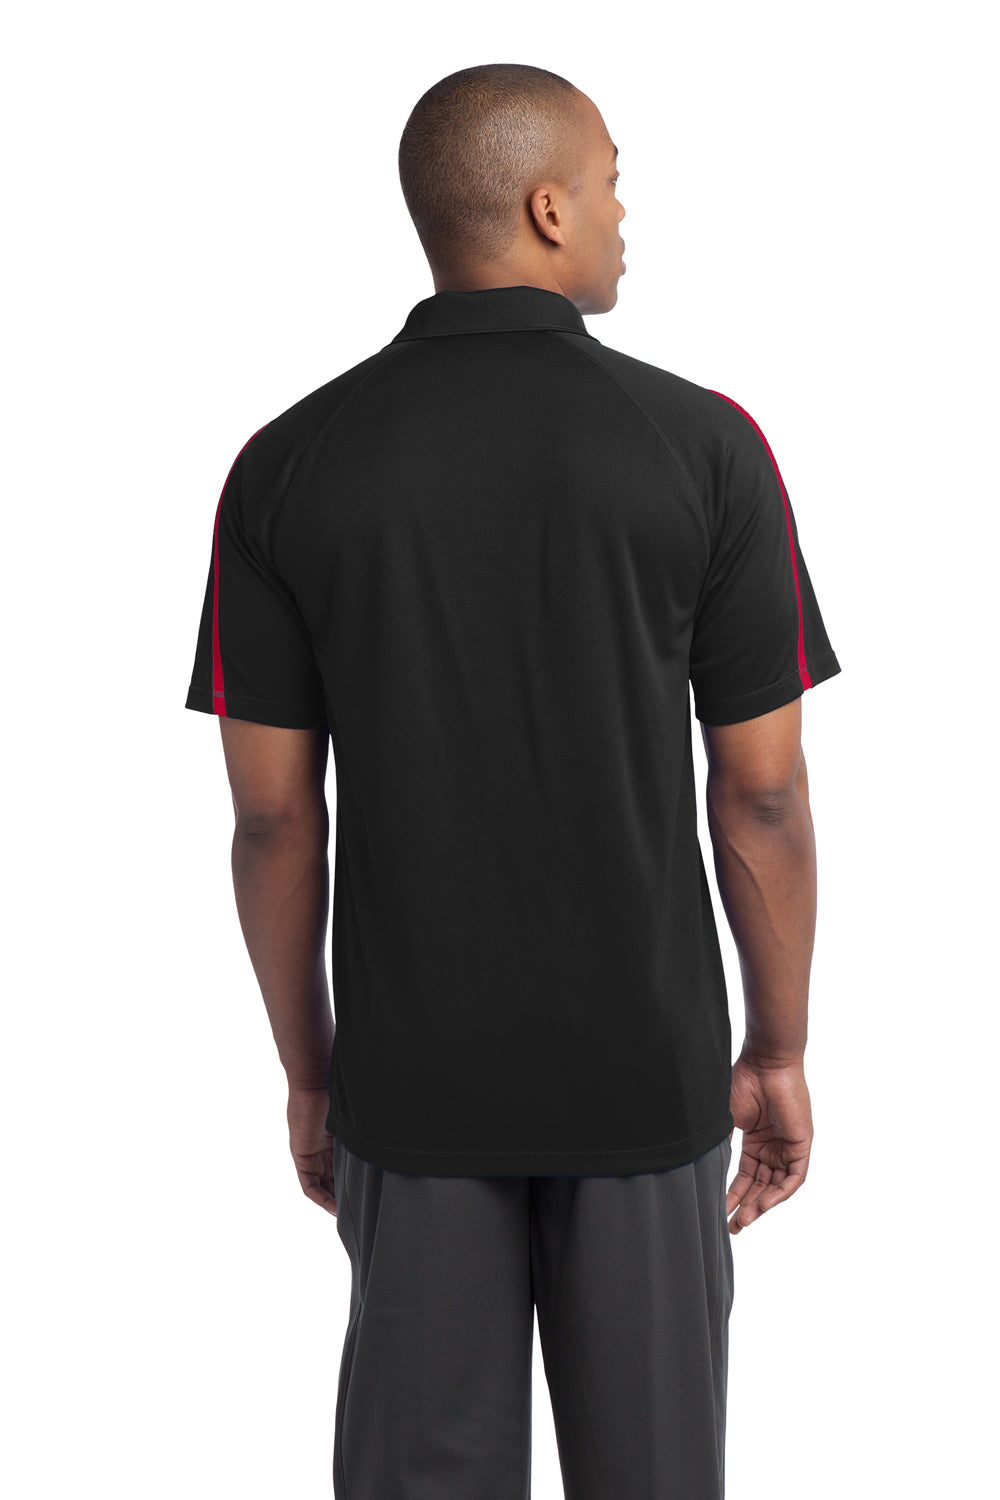 Sport-Tek ST685 Mens Micro-Mesh Moisture Wicking Short Sleeve Polo Shirt Black/Red Back